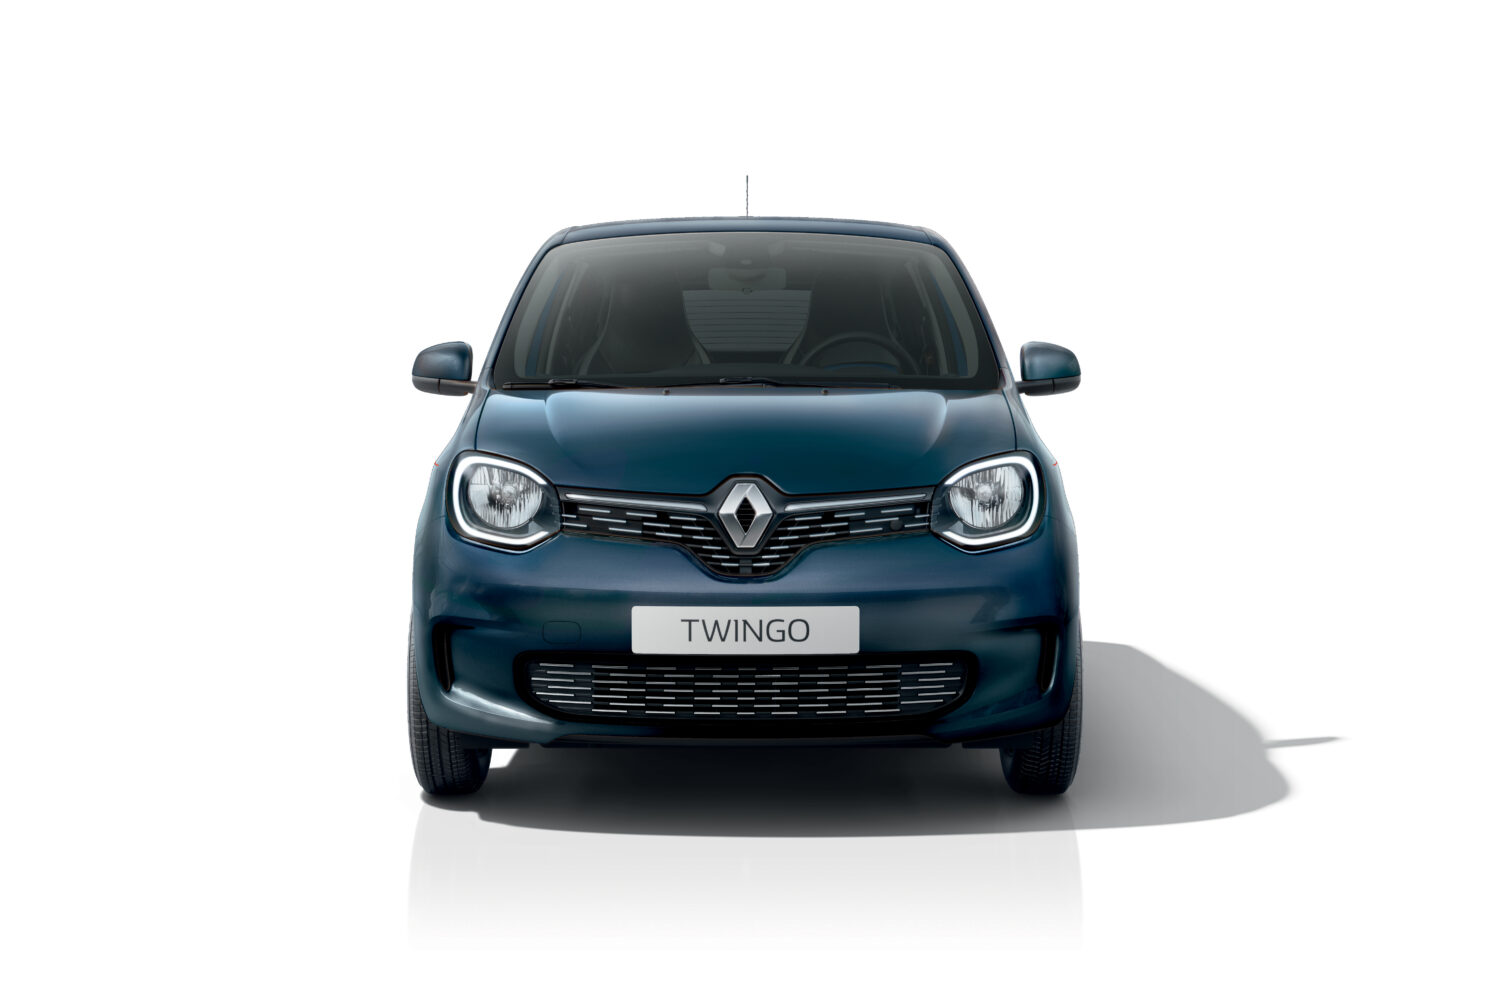 2020 - Renault TWINGO SIGNATURE